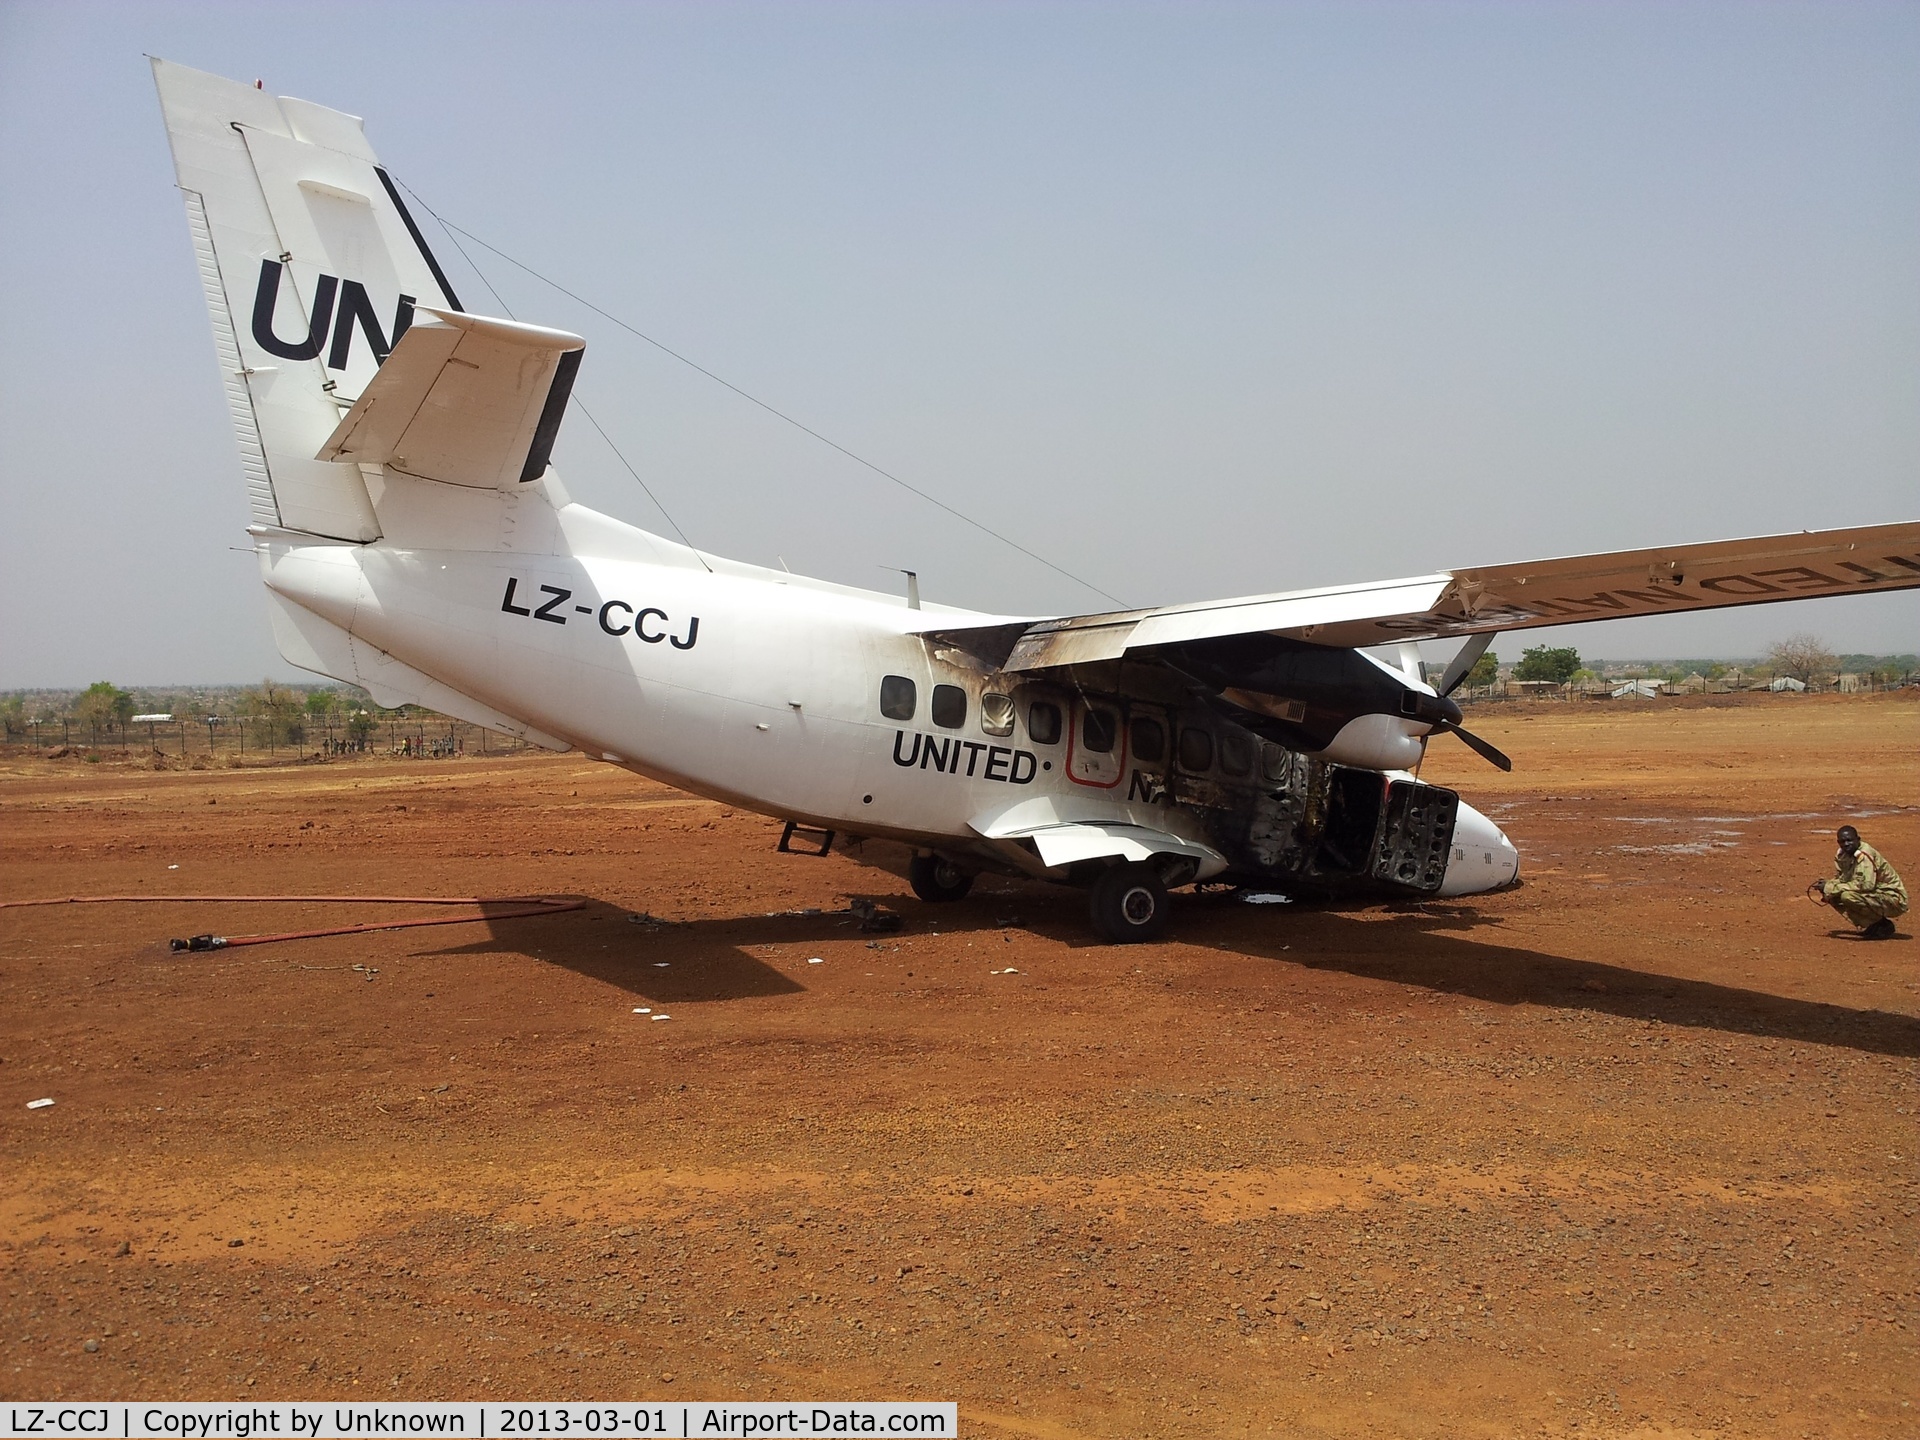 LZ-CCJ, 2002 Let L-410UVP-E9 Turbolet C/N 022634, After crash landing in Wau, South Sudan